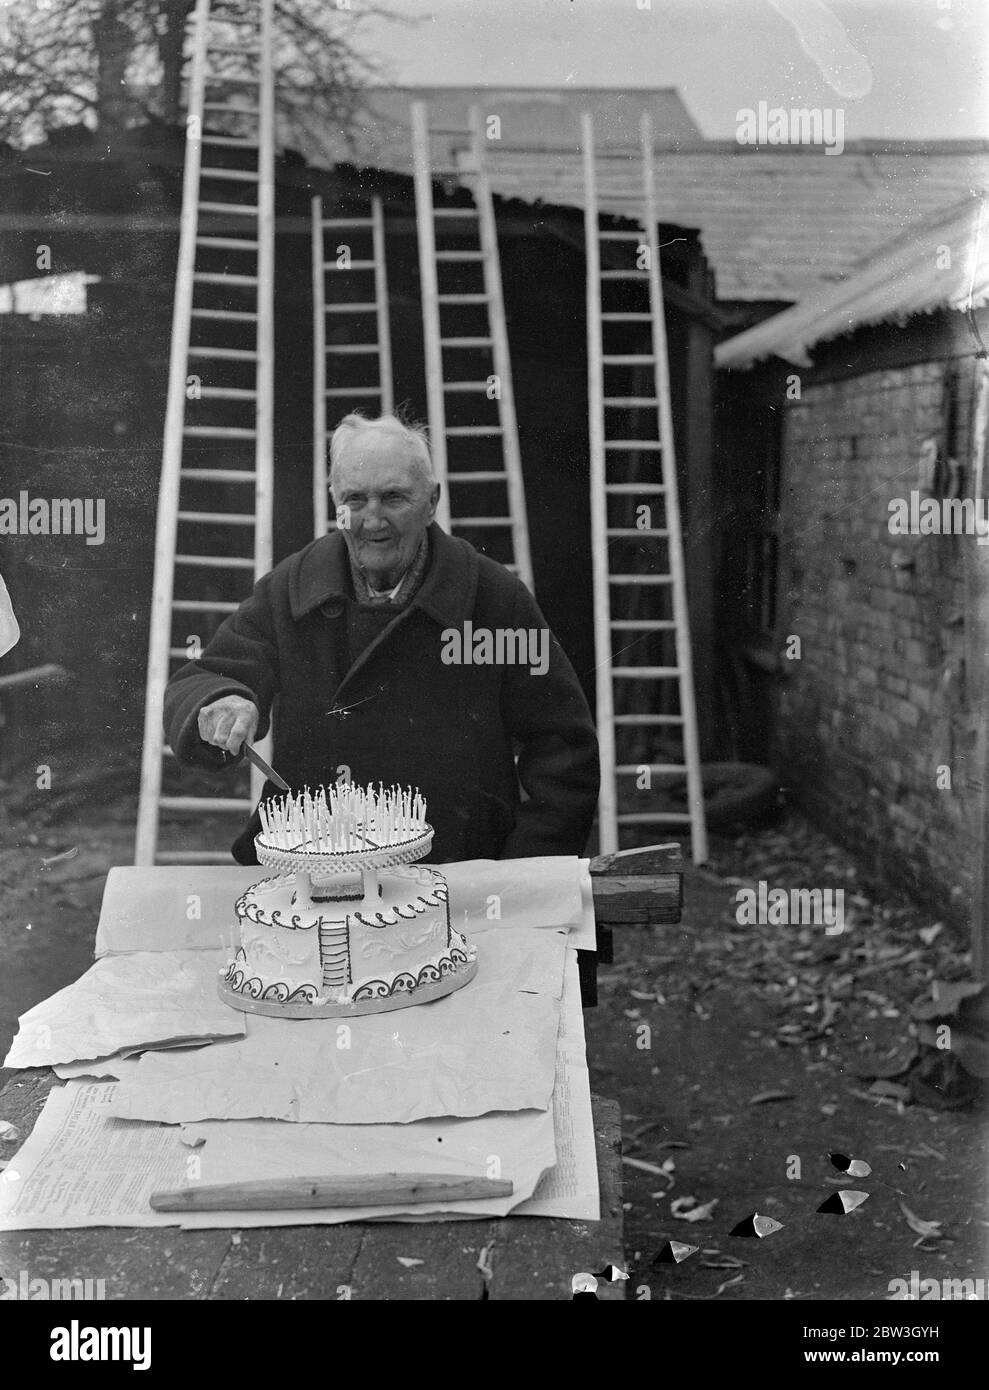 Southampton Ladder King est prêt pour son 105e anniversaire . M. James Miles avec son immense gâteau d'anniversaire portant 105 bougies . 16 mars 1935 Banque D'Images